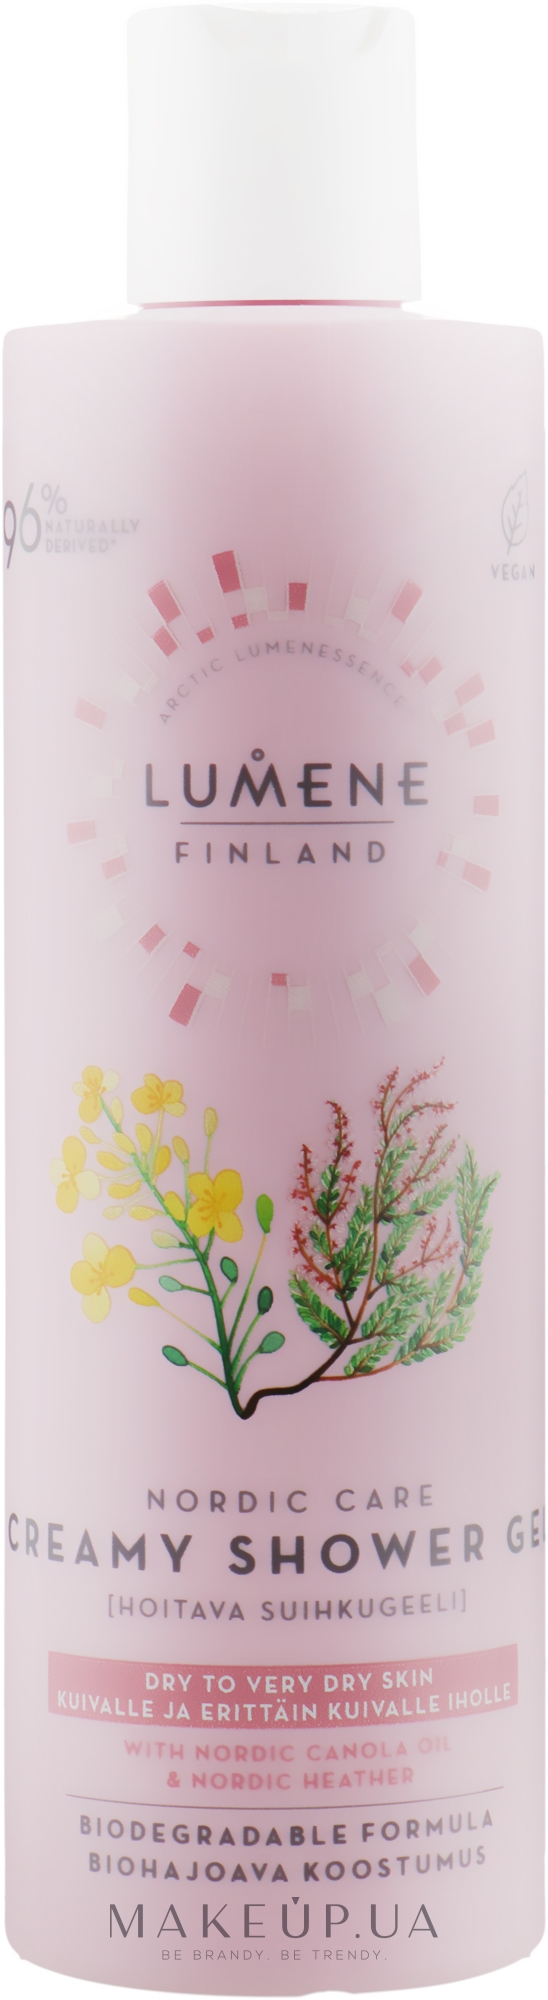 Крем-гель для душа смягчающий для сухой кожи - Lumene Nordic Care Creamy Shower Gel — фото 250ml